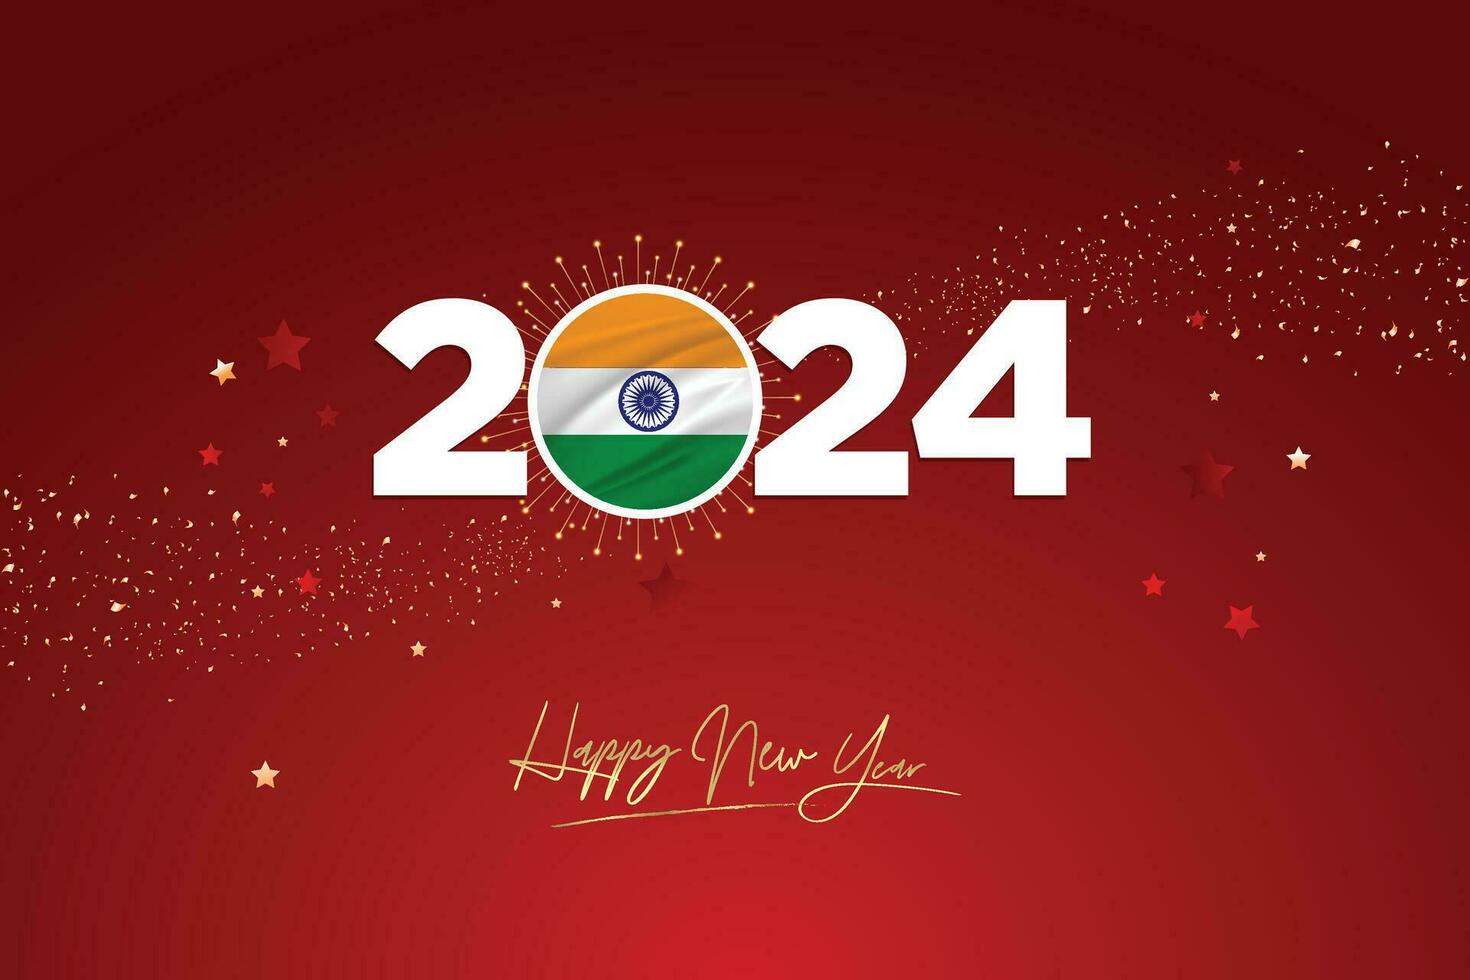 kleurrijk gelukkig nieuw jaar festival ontwerp banier, nieuw jaar 2024 logo met Indisch vlag Aan rood-kastanjebruin confetti en ster achtergrond, kalender 2024, sociaal media nieuw jaar banier, post kaart, groeten vector